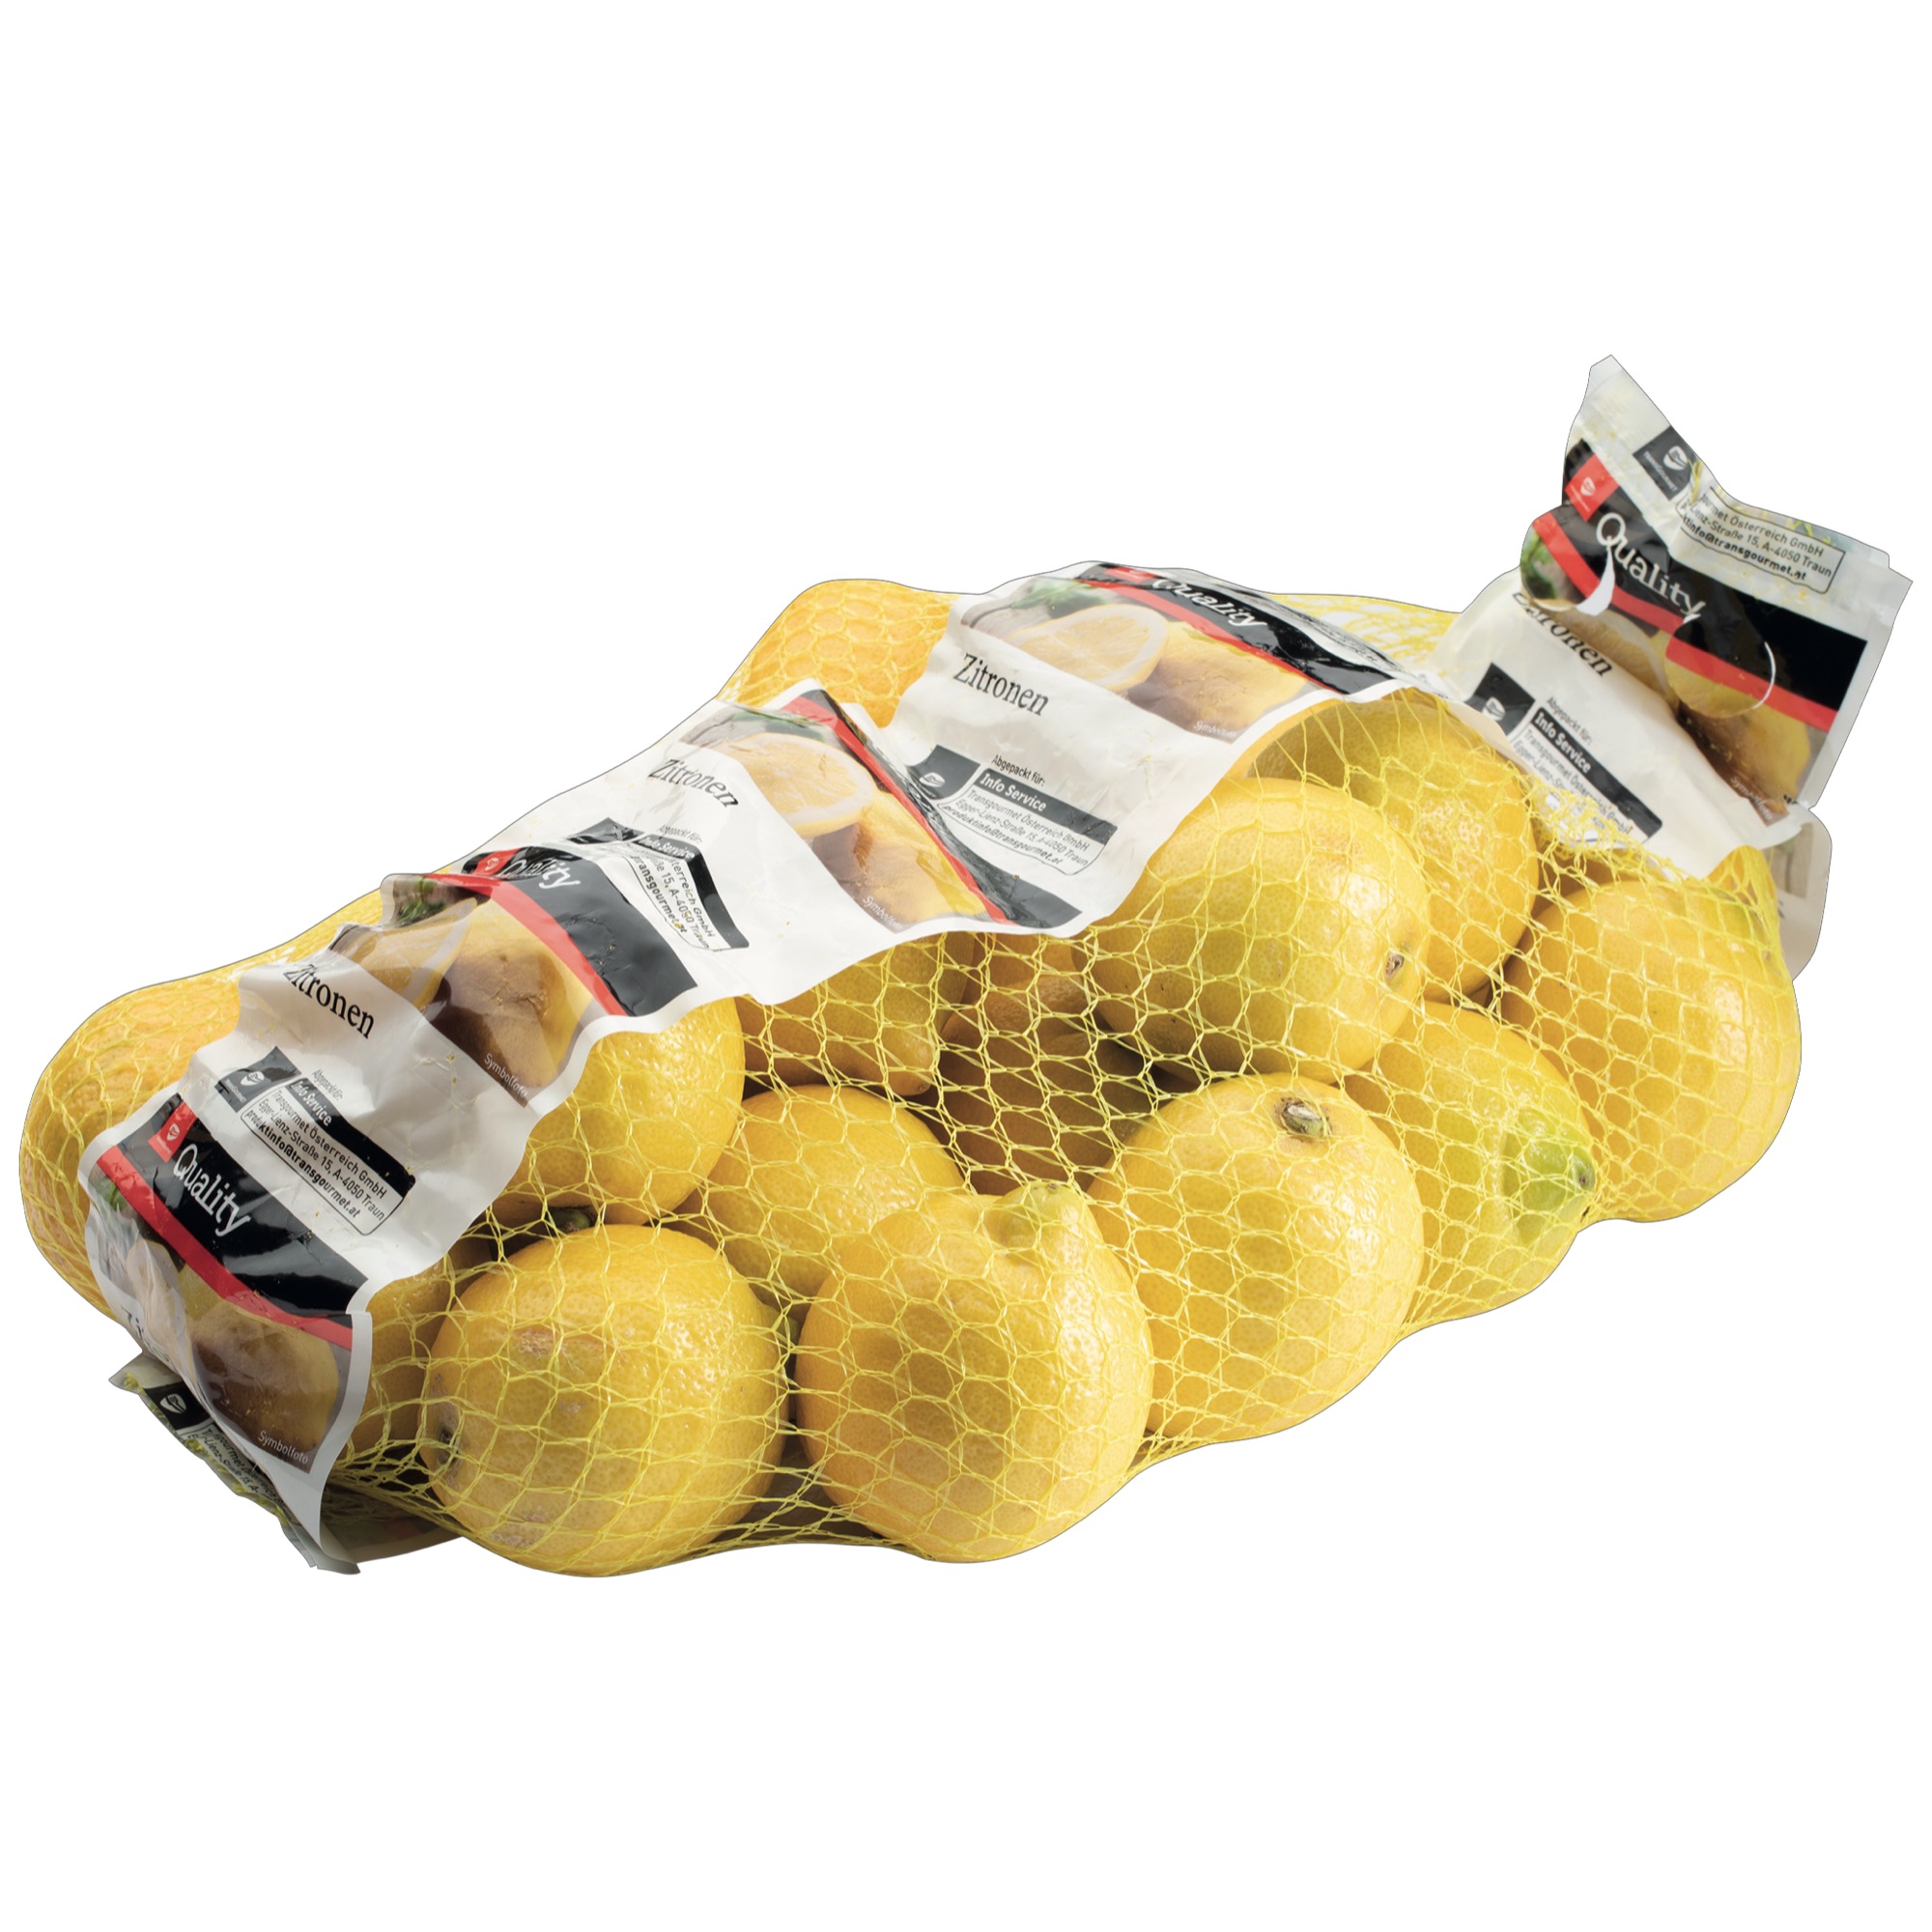 Quality citróny 20ks sieťka 1.tr.